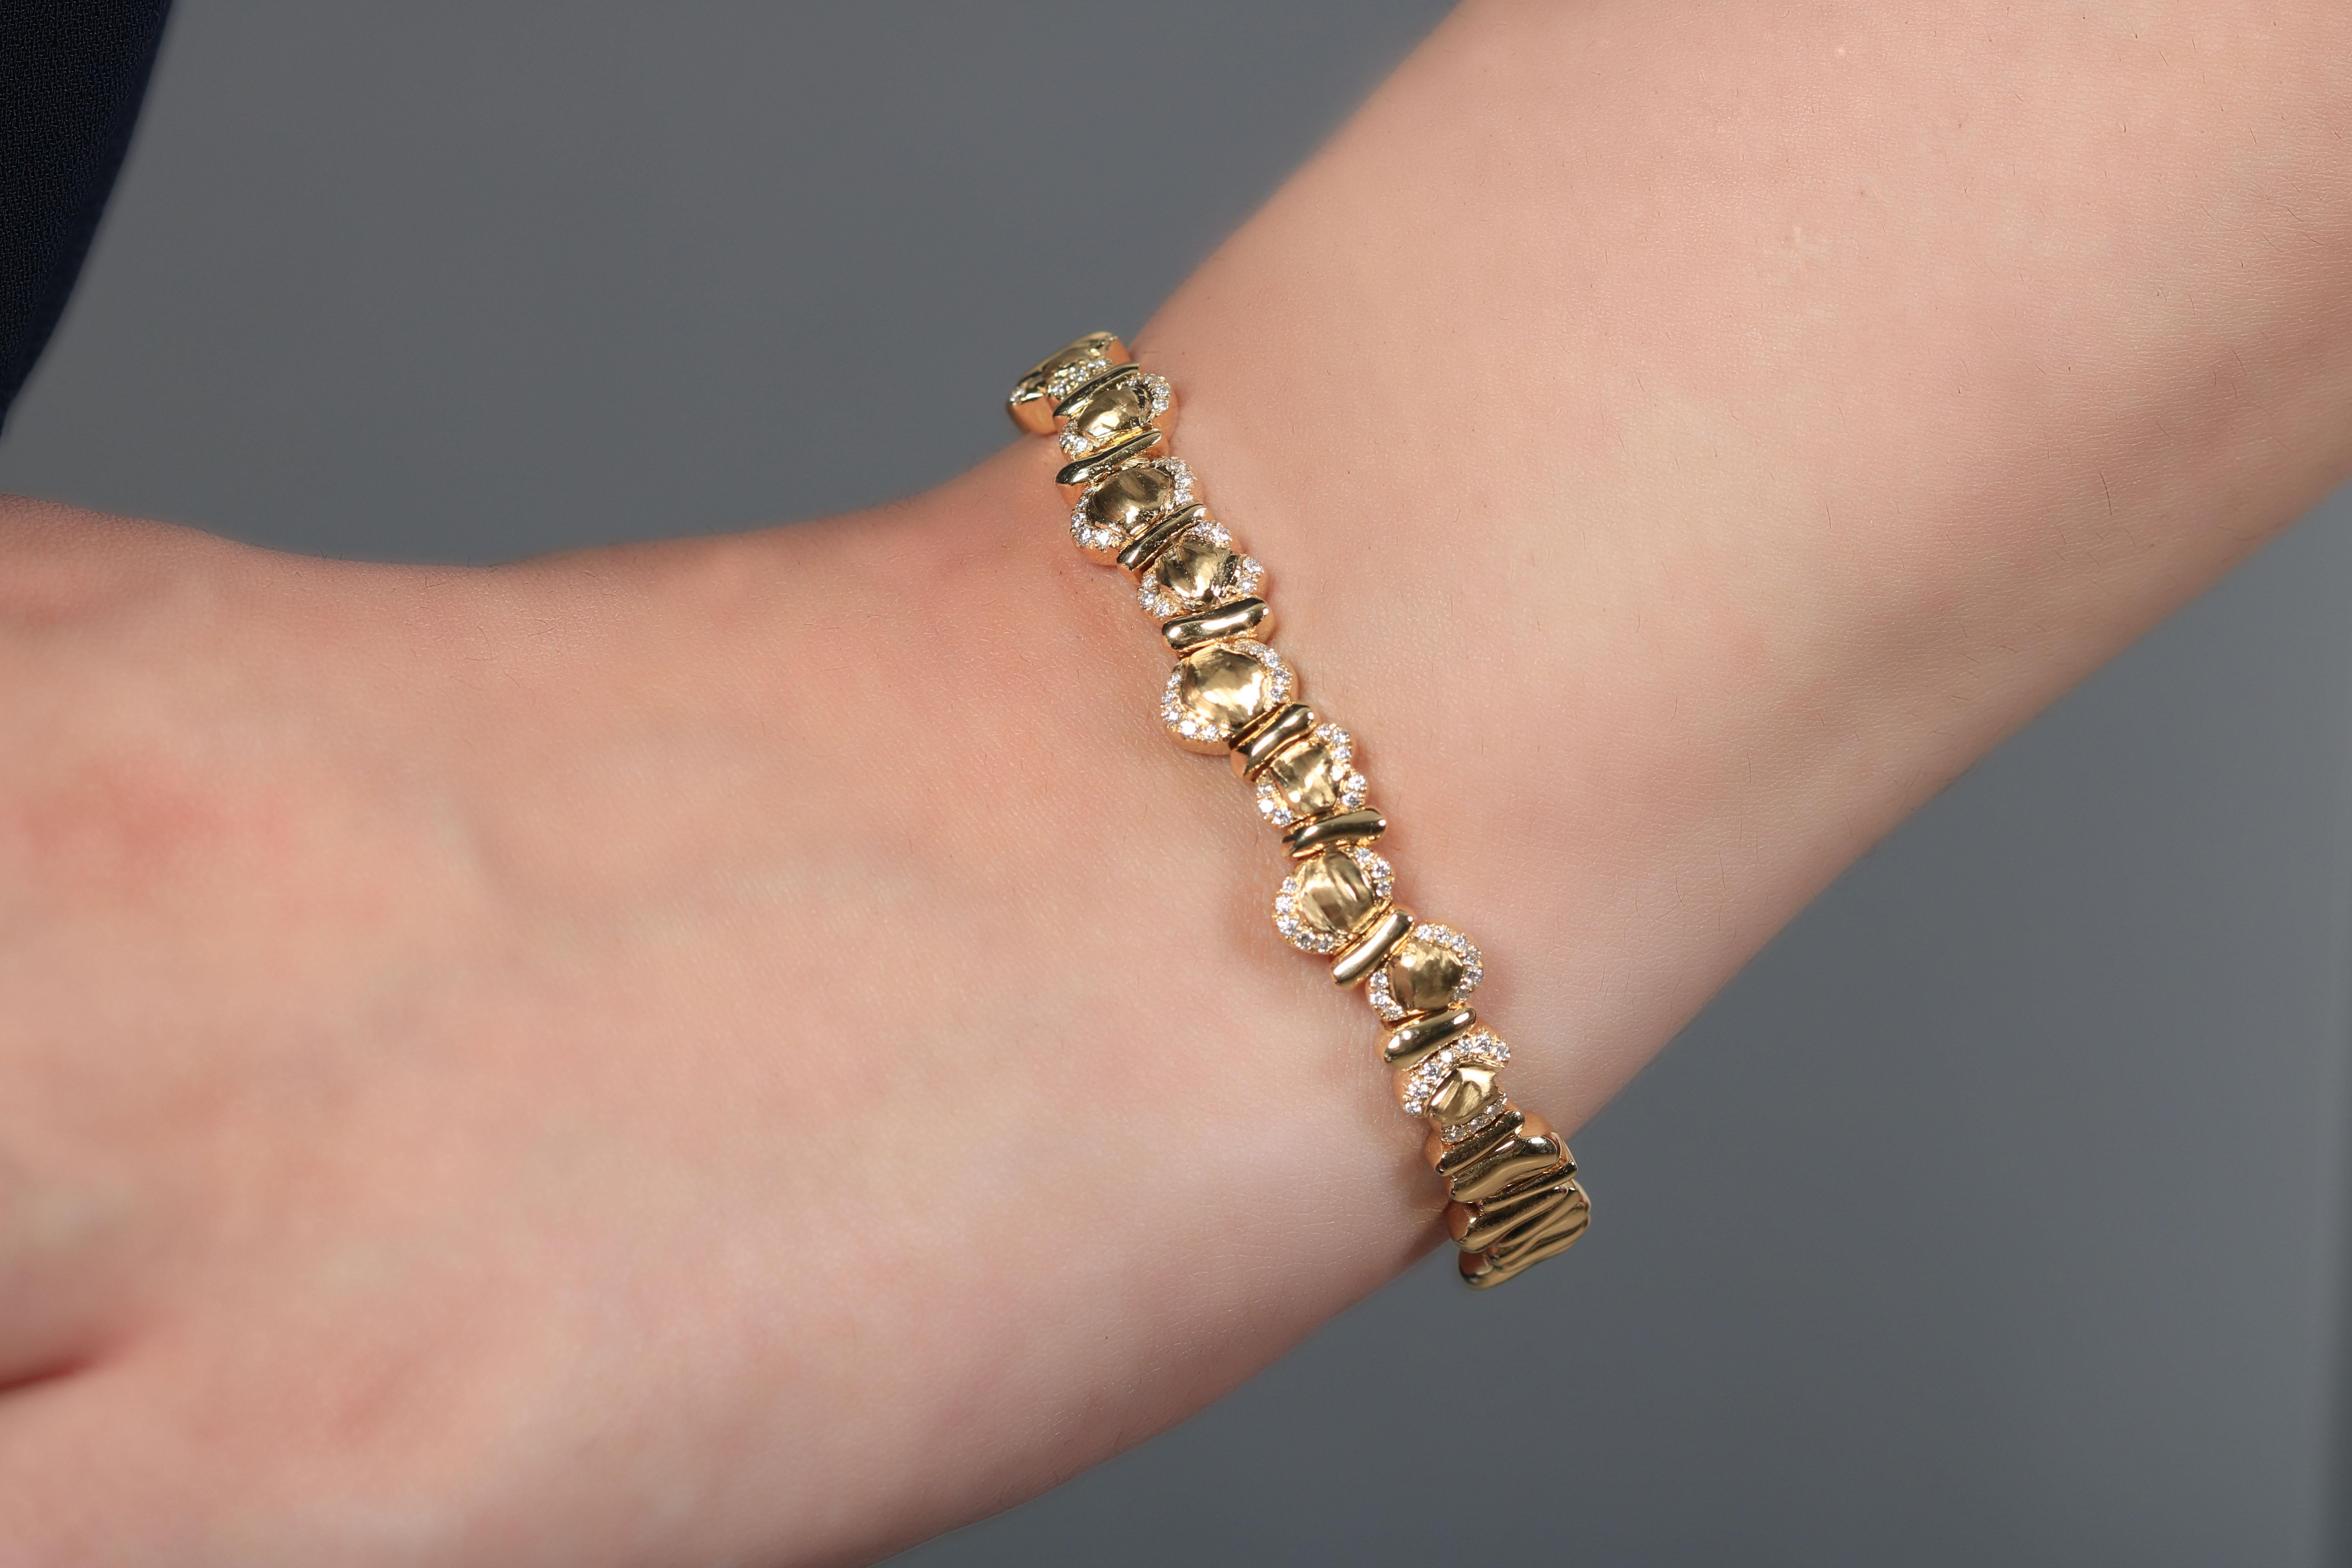 Dieses einzigartige Goldarmband ist eine perfekte Ergänzung und besteht aus Gelbgold und weißen Diamanten, die miteinander verbunden sind und einen innovativen Look ergeben. Das anspruchsvolle Design ist zeitlos und absolut überzeugend. Seine